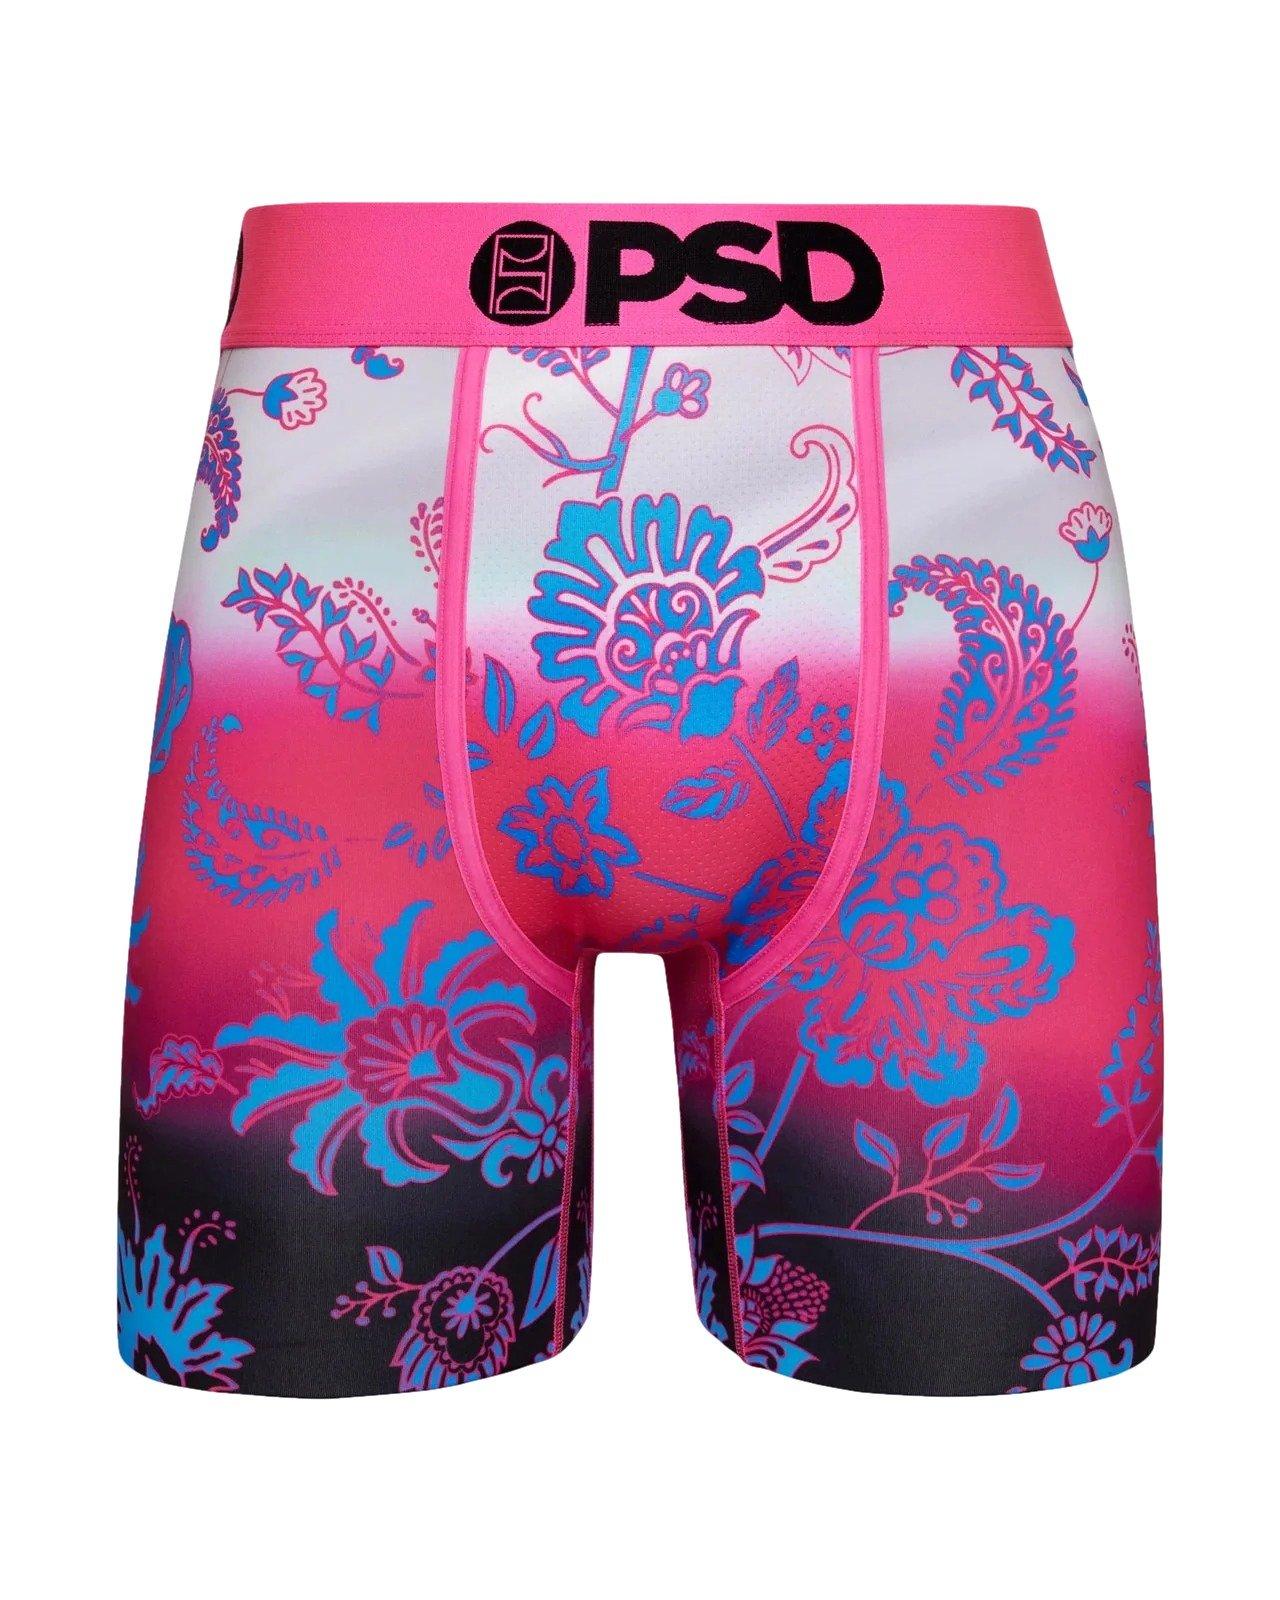 PSD Kids' Clothes, Boys & Girls Clothes, Hibbett